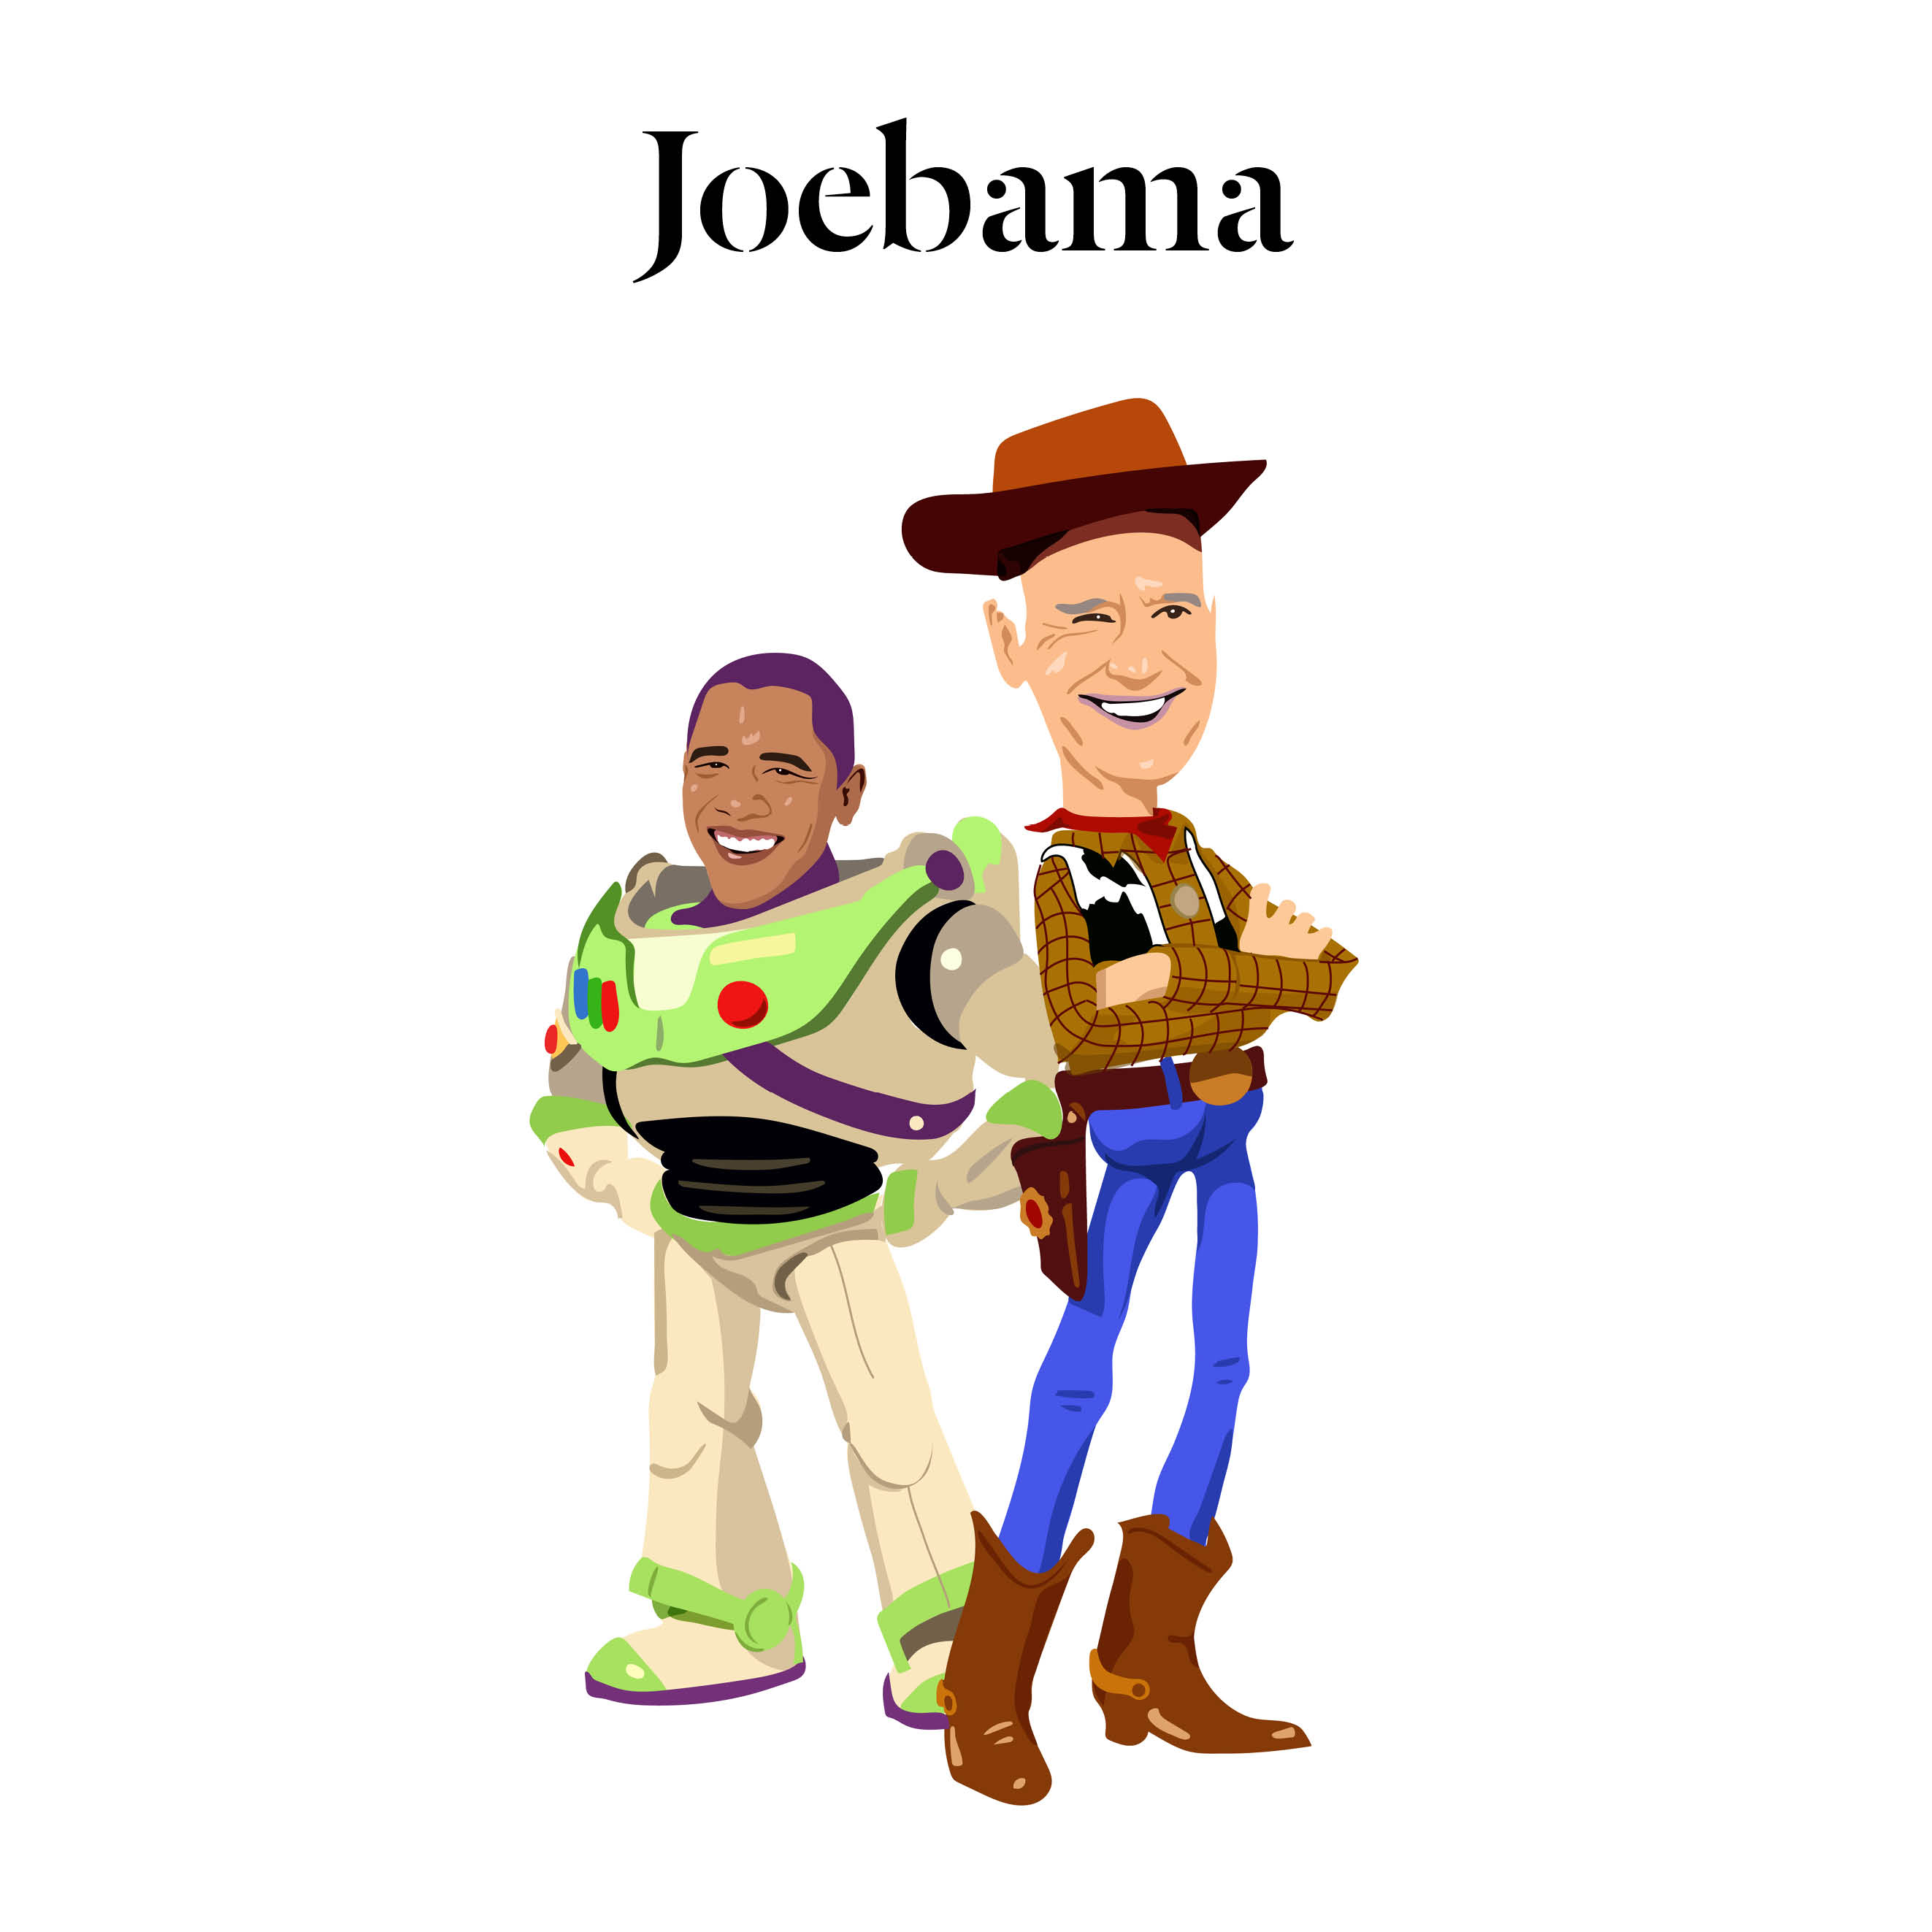 Joebama